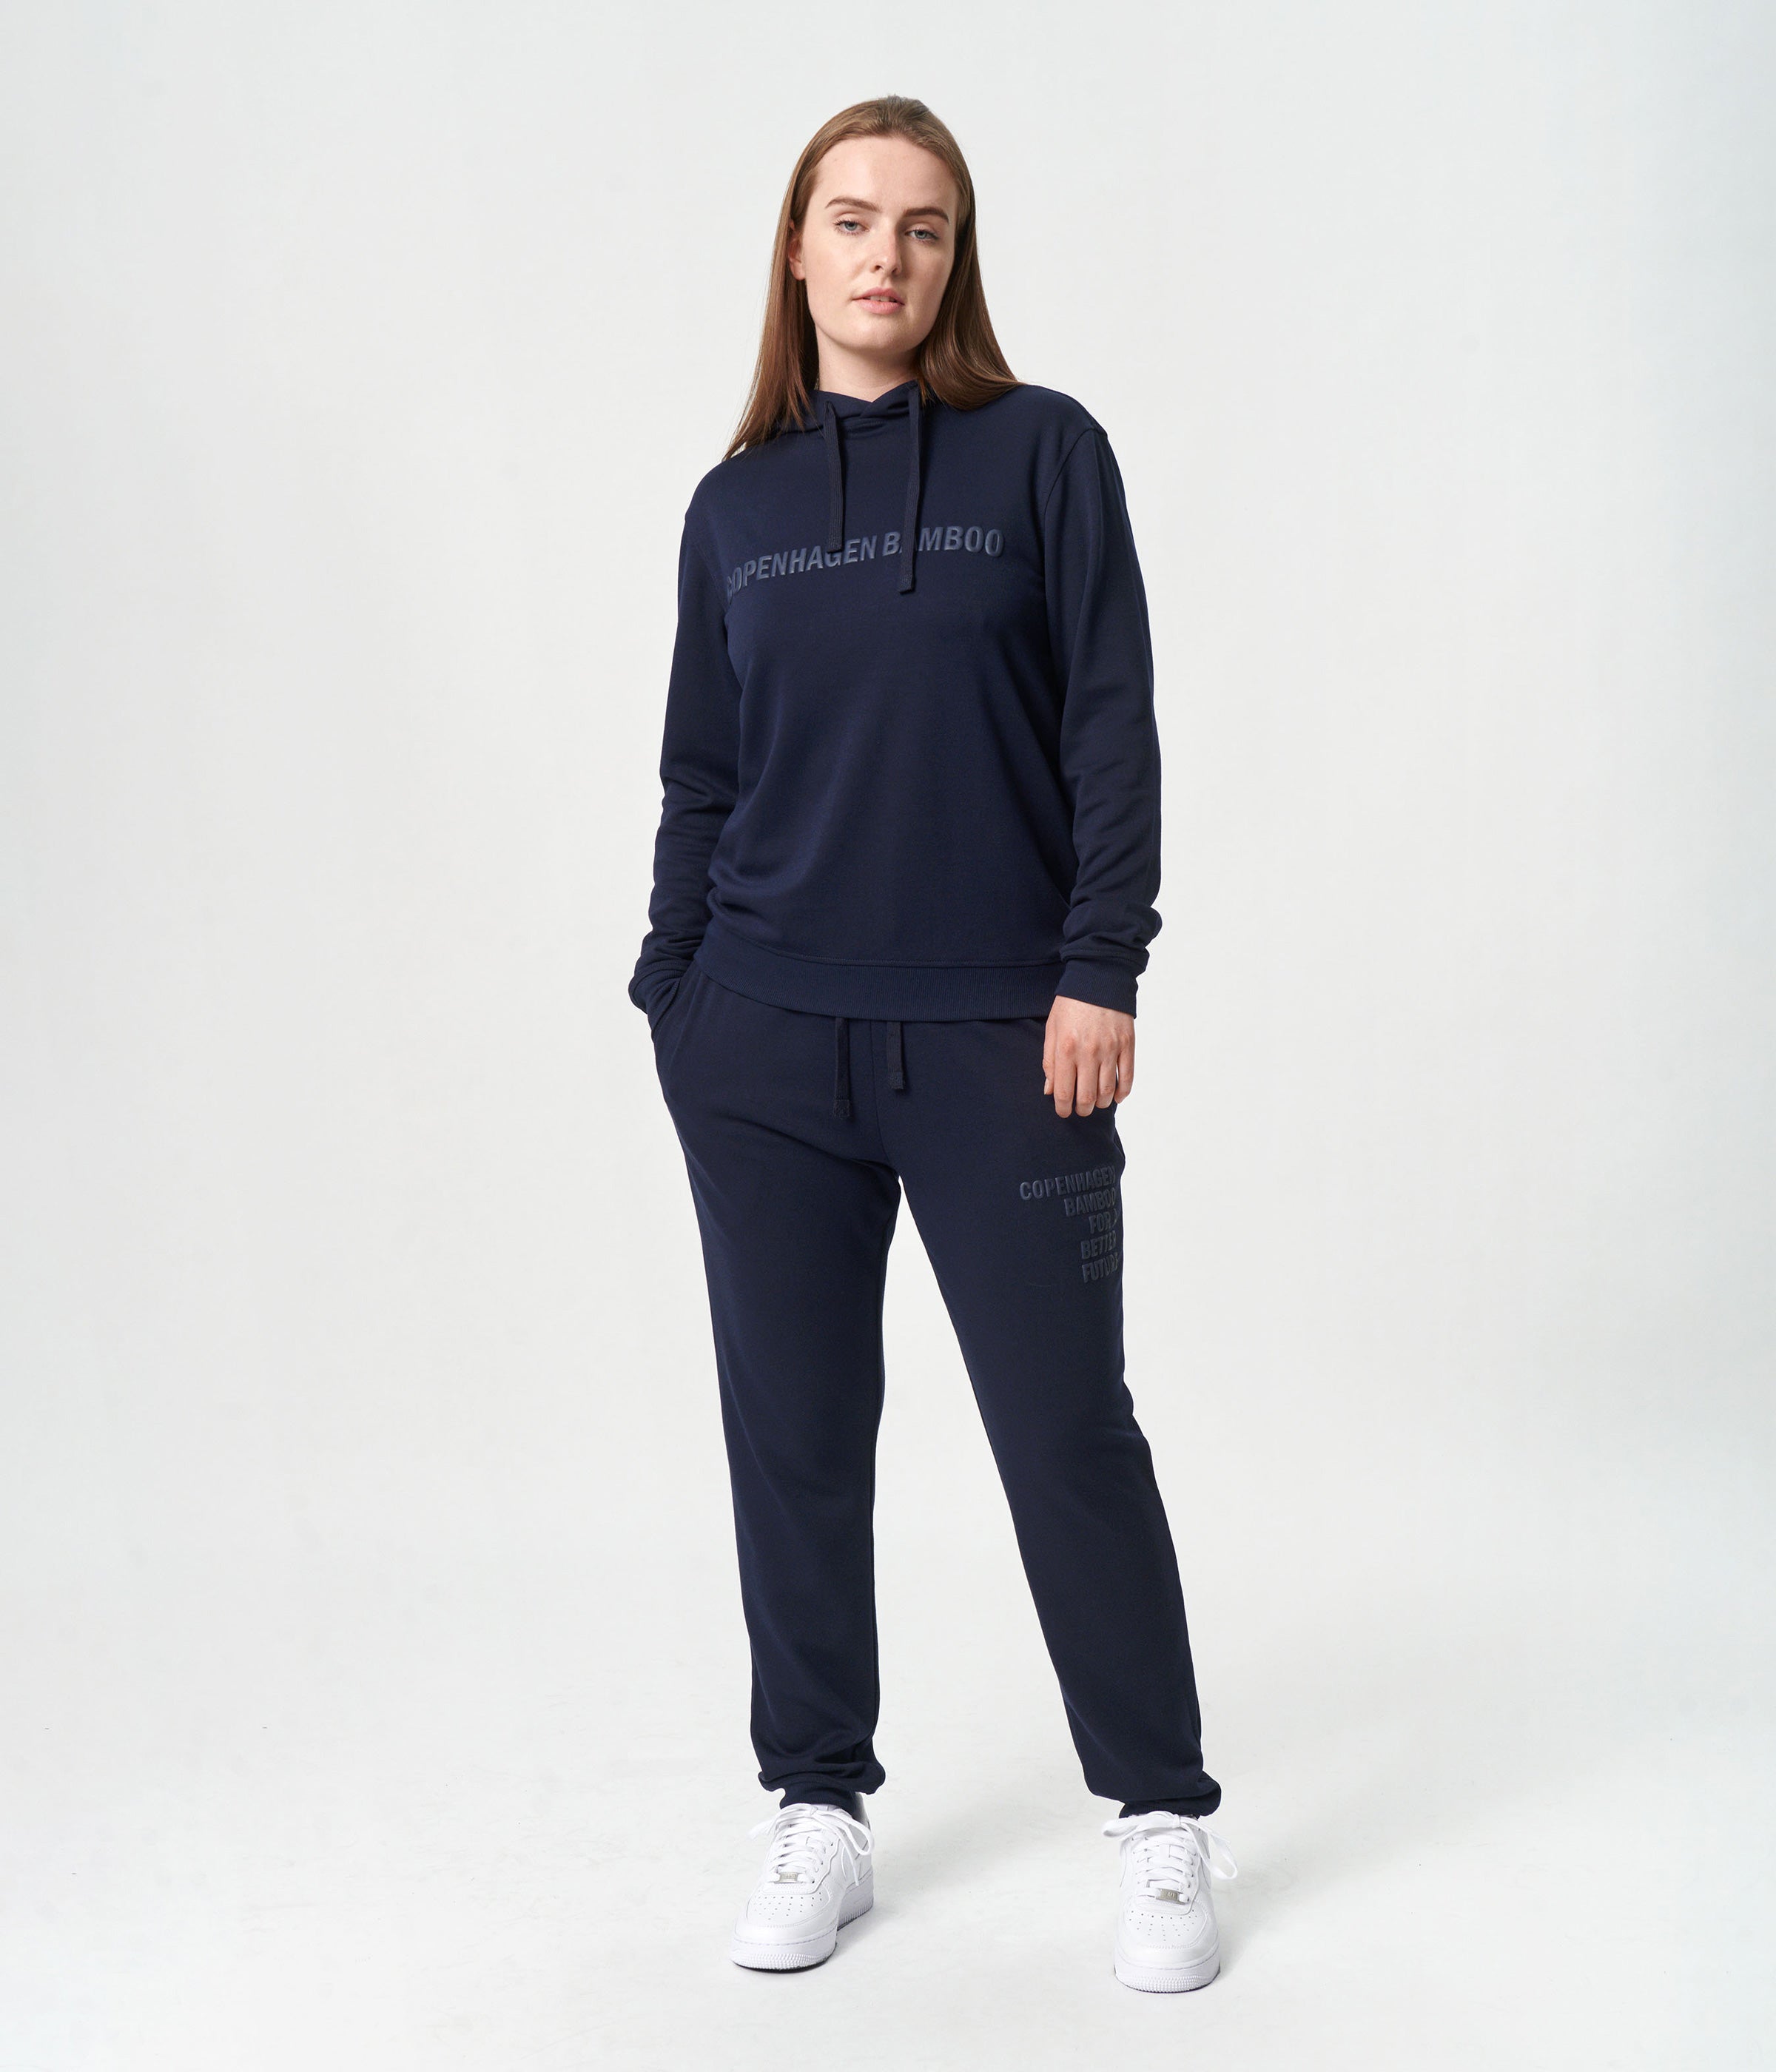 Bambus hoodie joggingsæt i navyblå med logo til damer fra Copenhagen Bamboo, XS